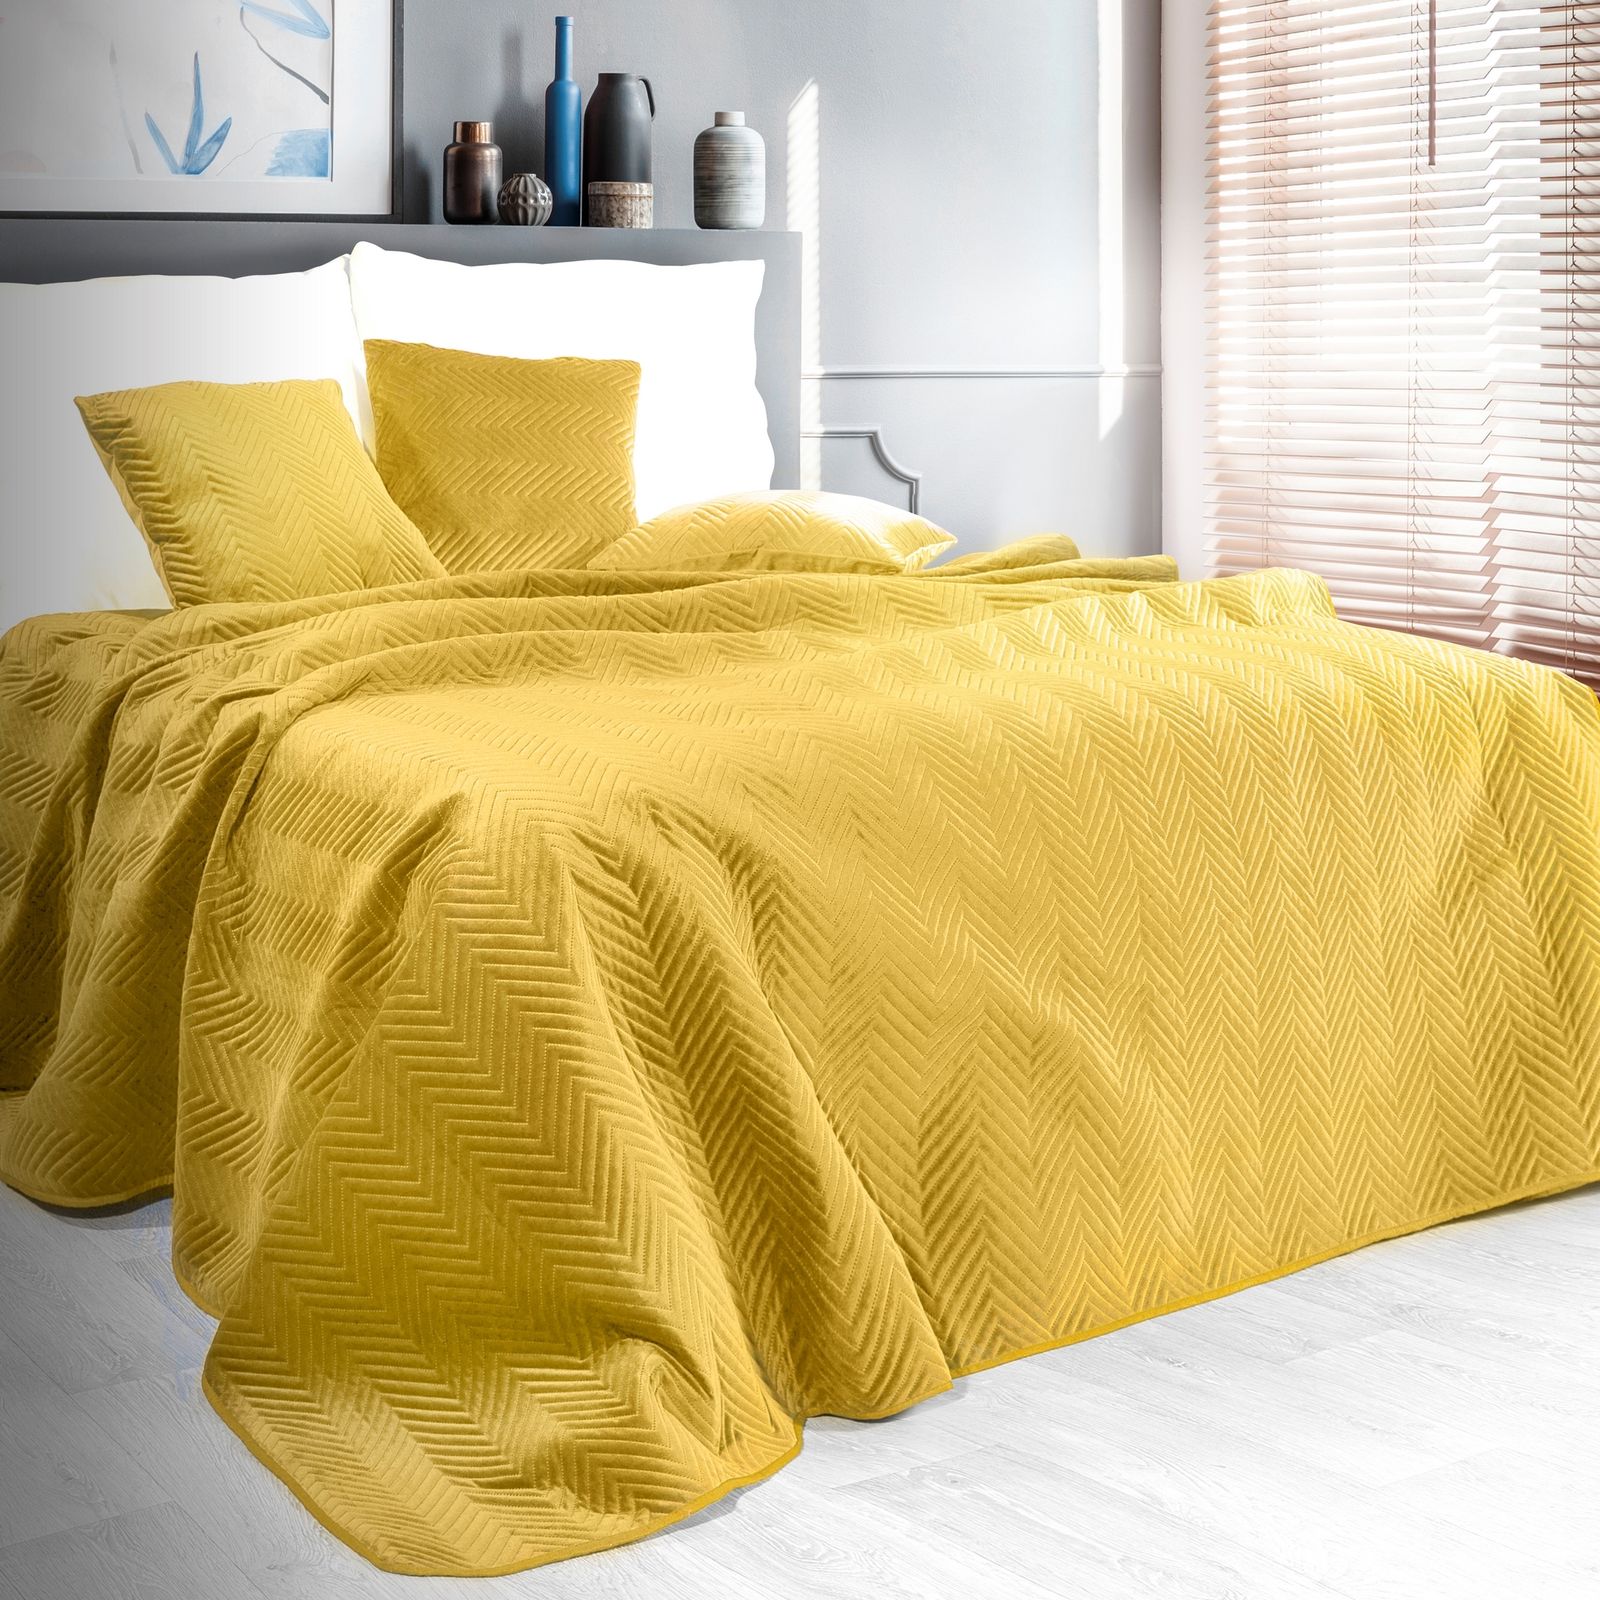 Горчичная кровать. Покрывало 240 260 горчичное желтое. Покрывало 220х240 горчичный. Покрывало горчичного цвета. Плед на кровать.